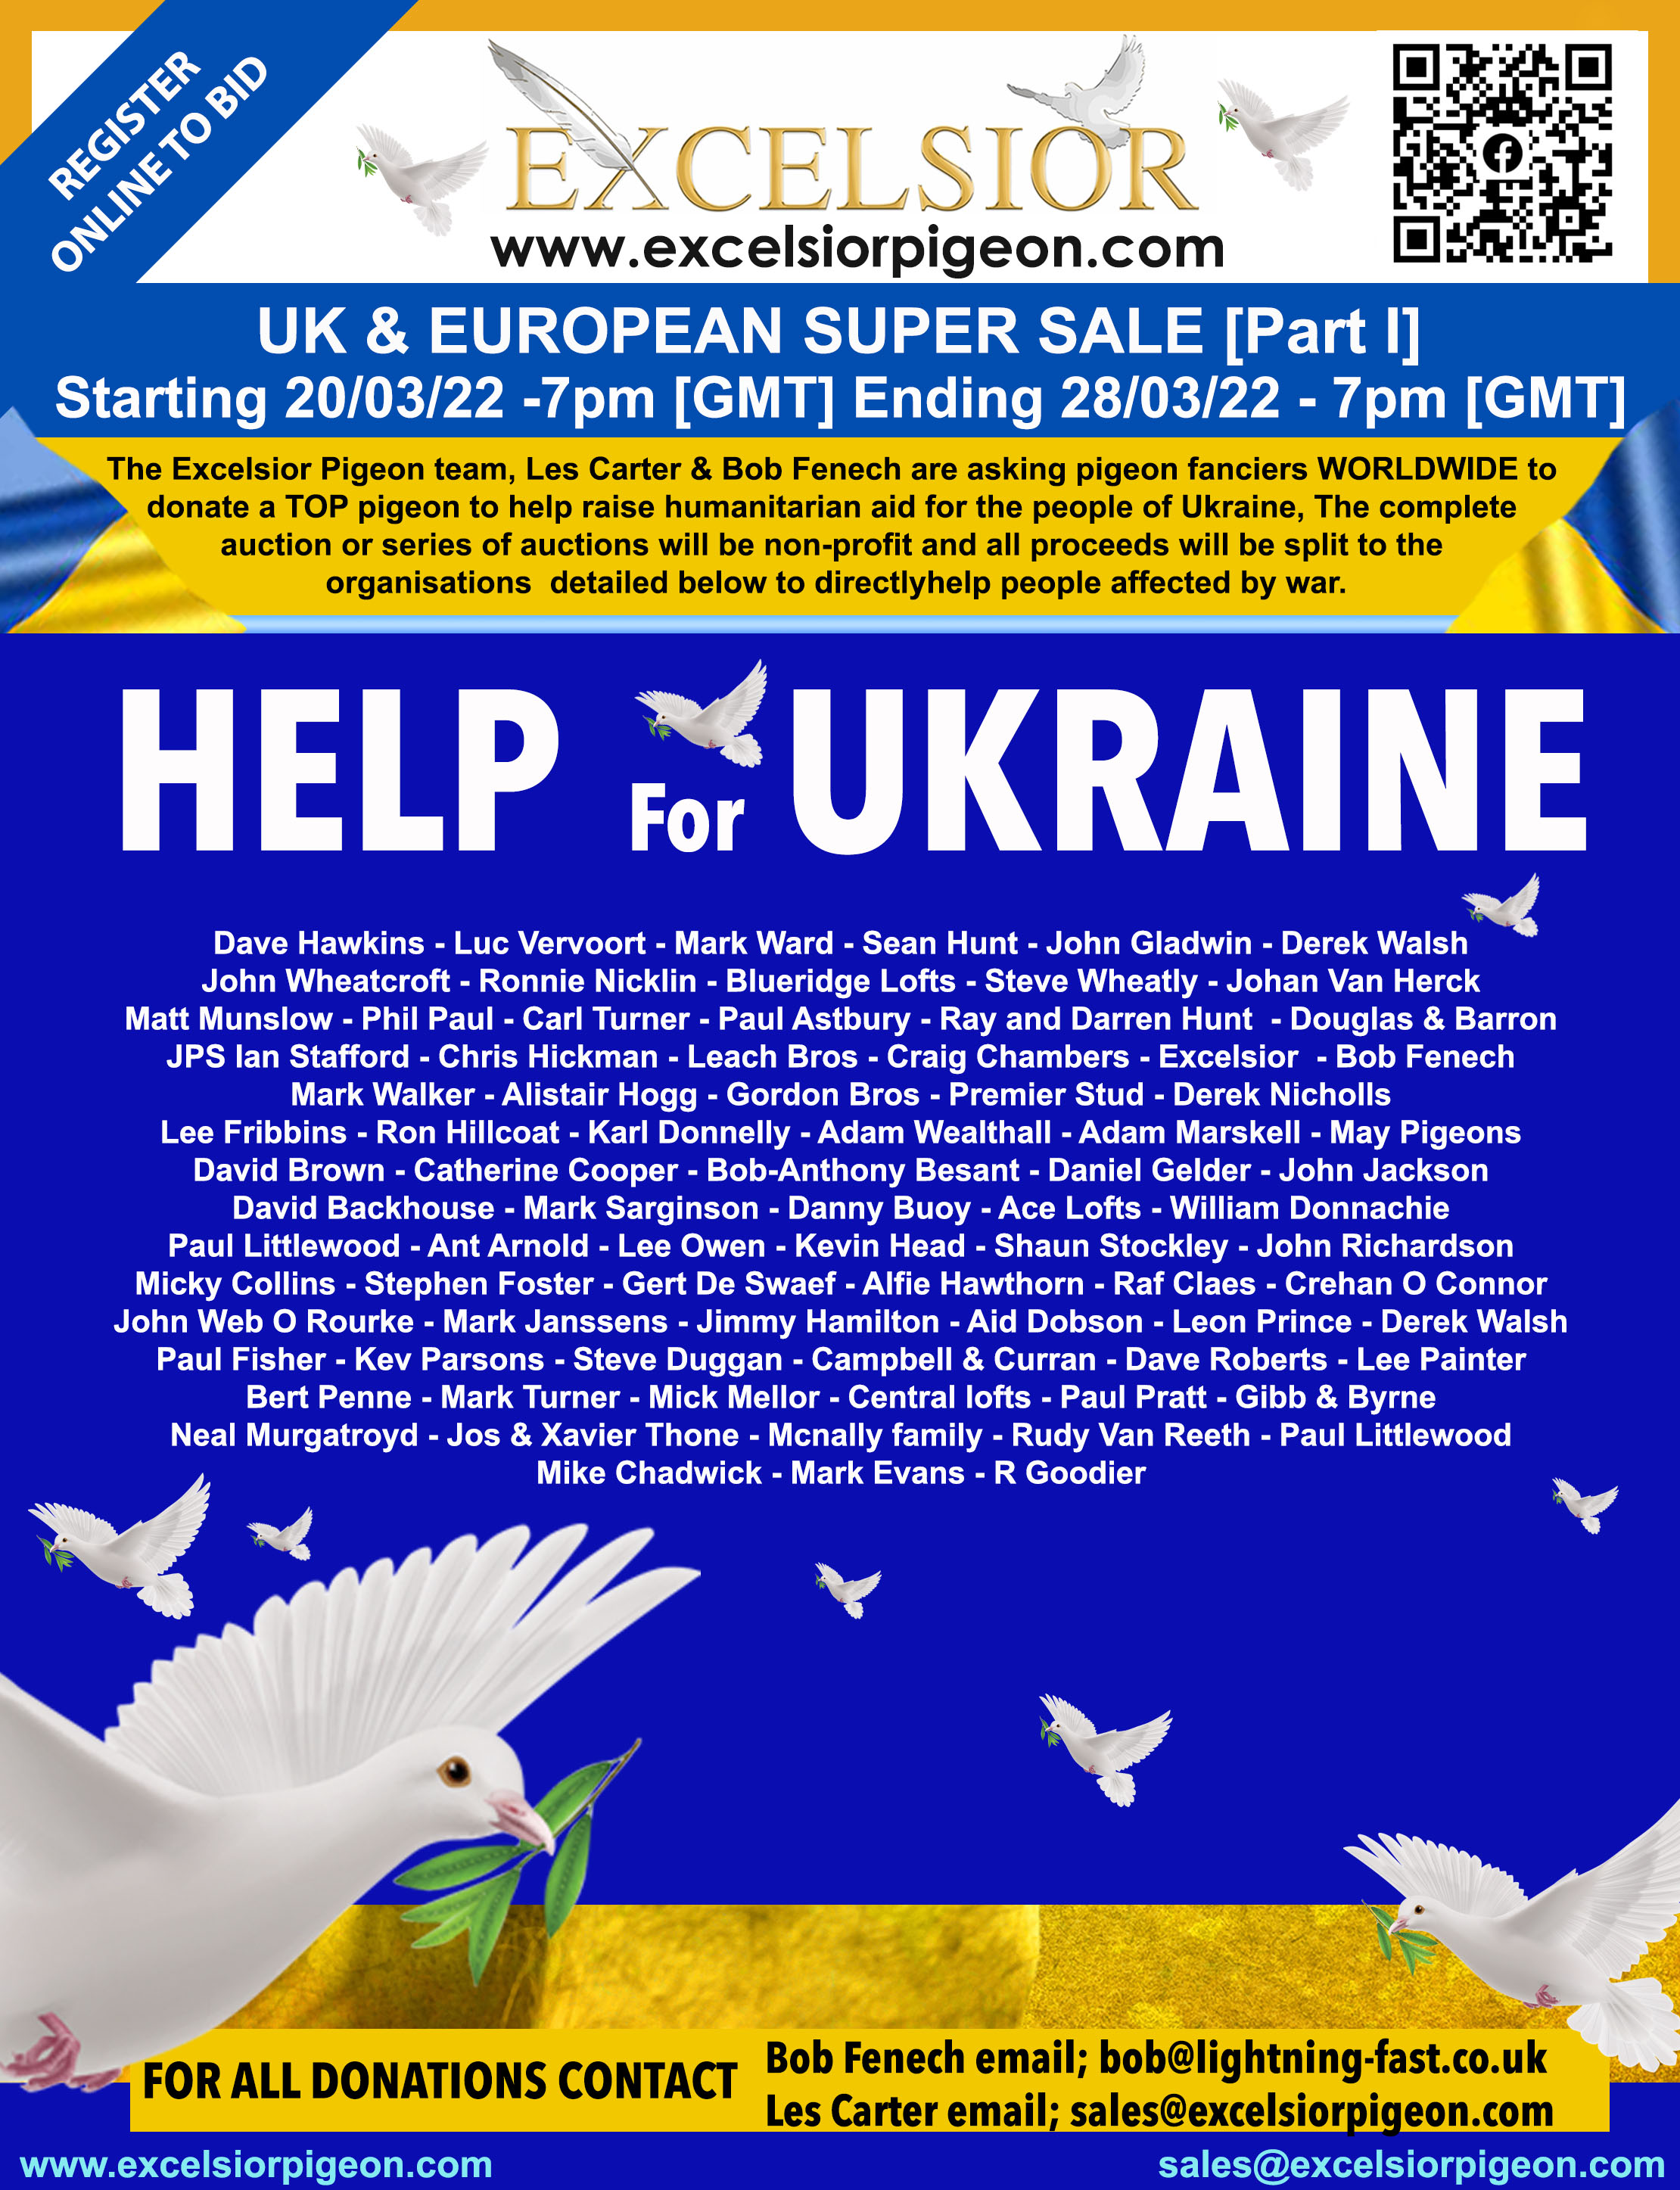 HELP FOR UKRAINE SALES STARTING LIVE ON EXCELSIOR 20/03/22